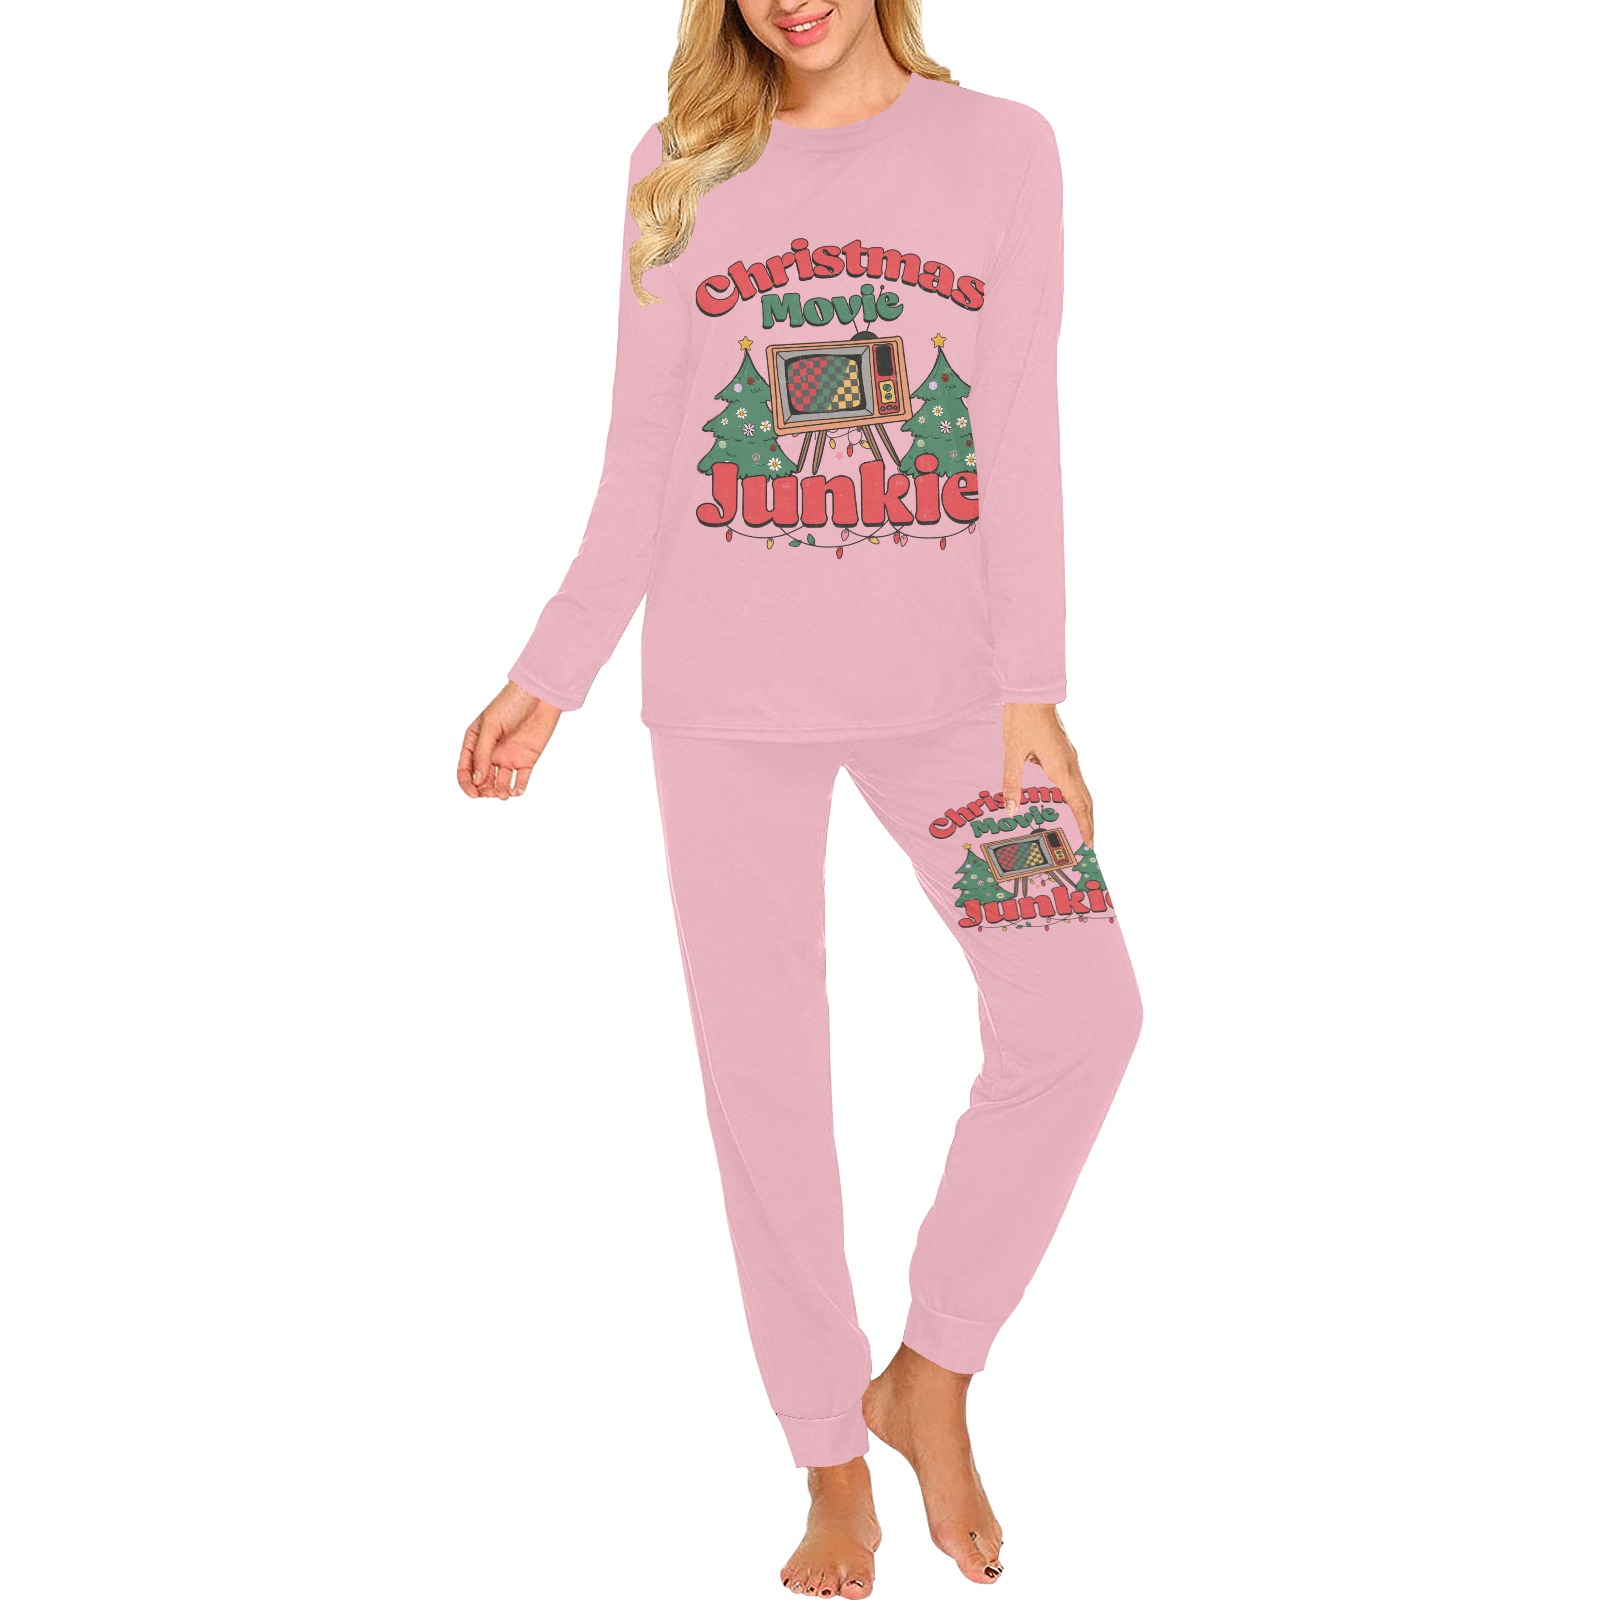 Christmas Movie Junkie (P) Women's All Over Print Pajama Set